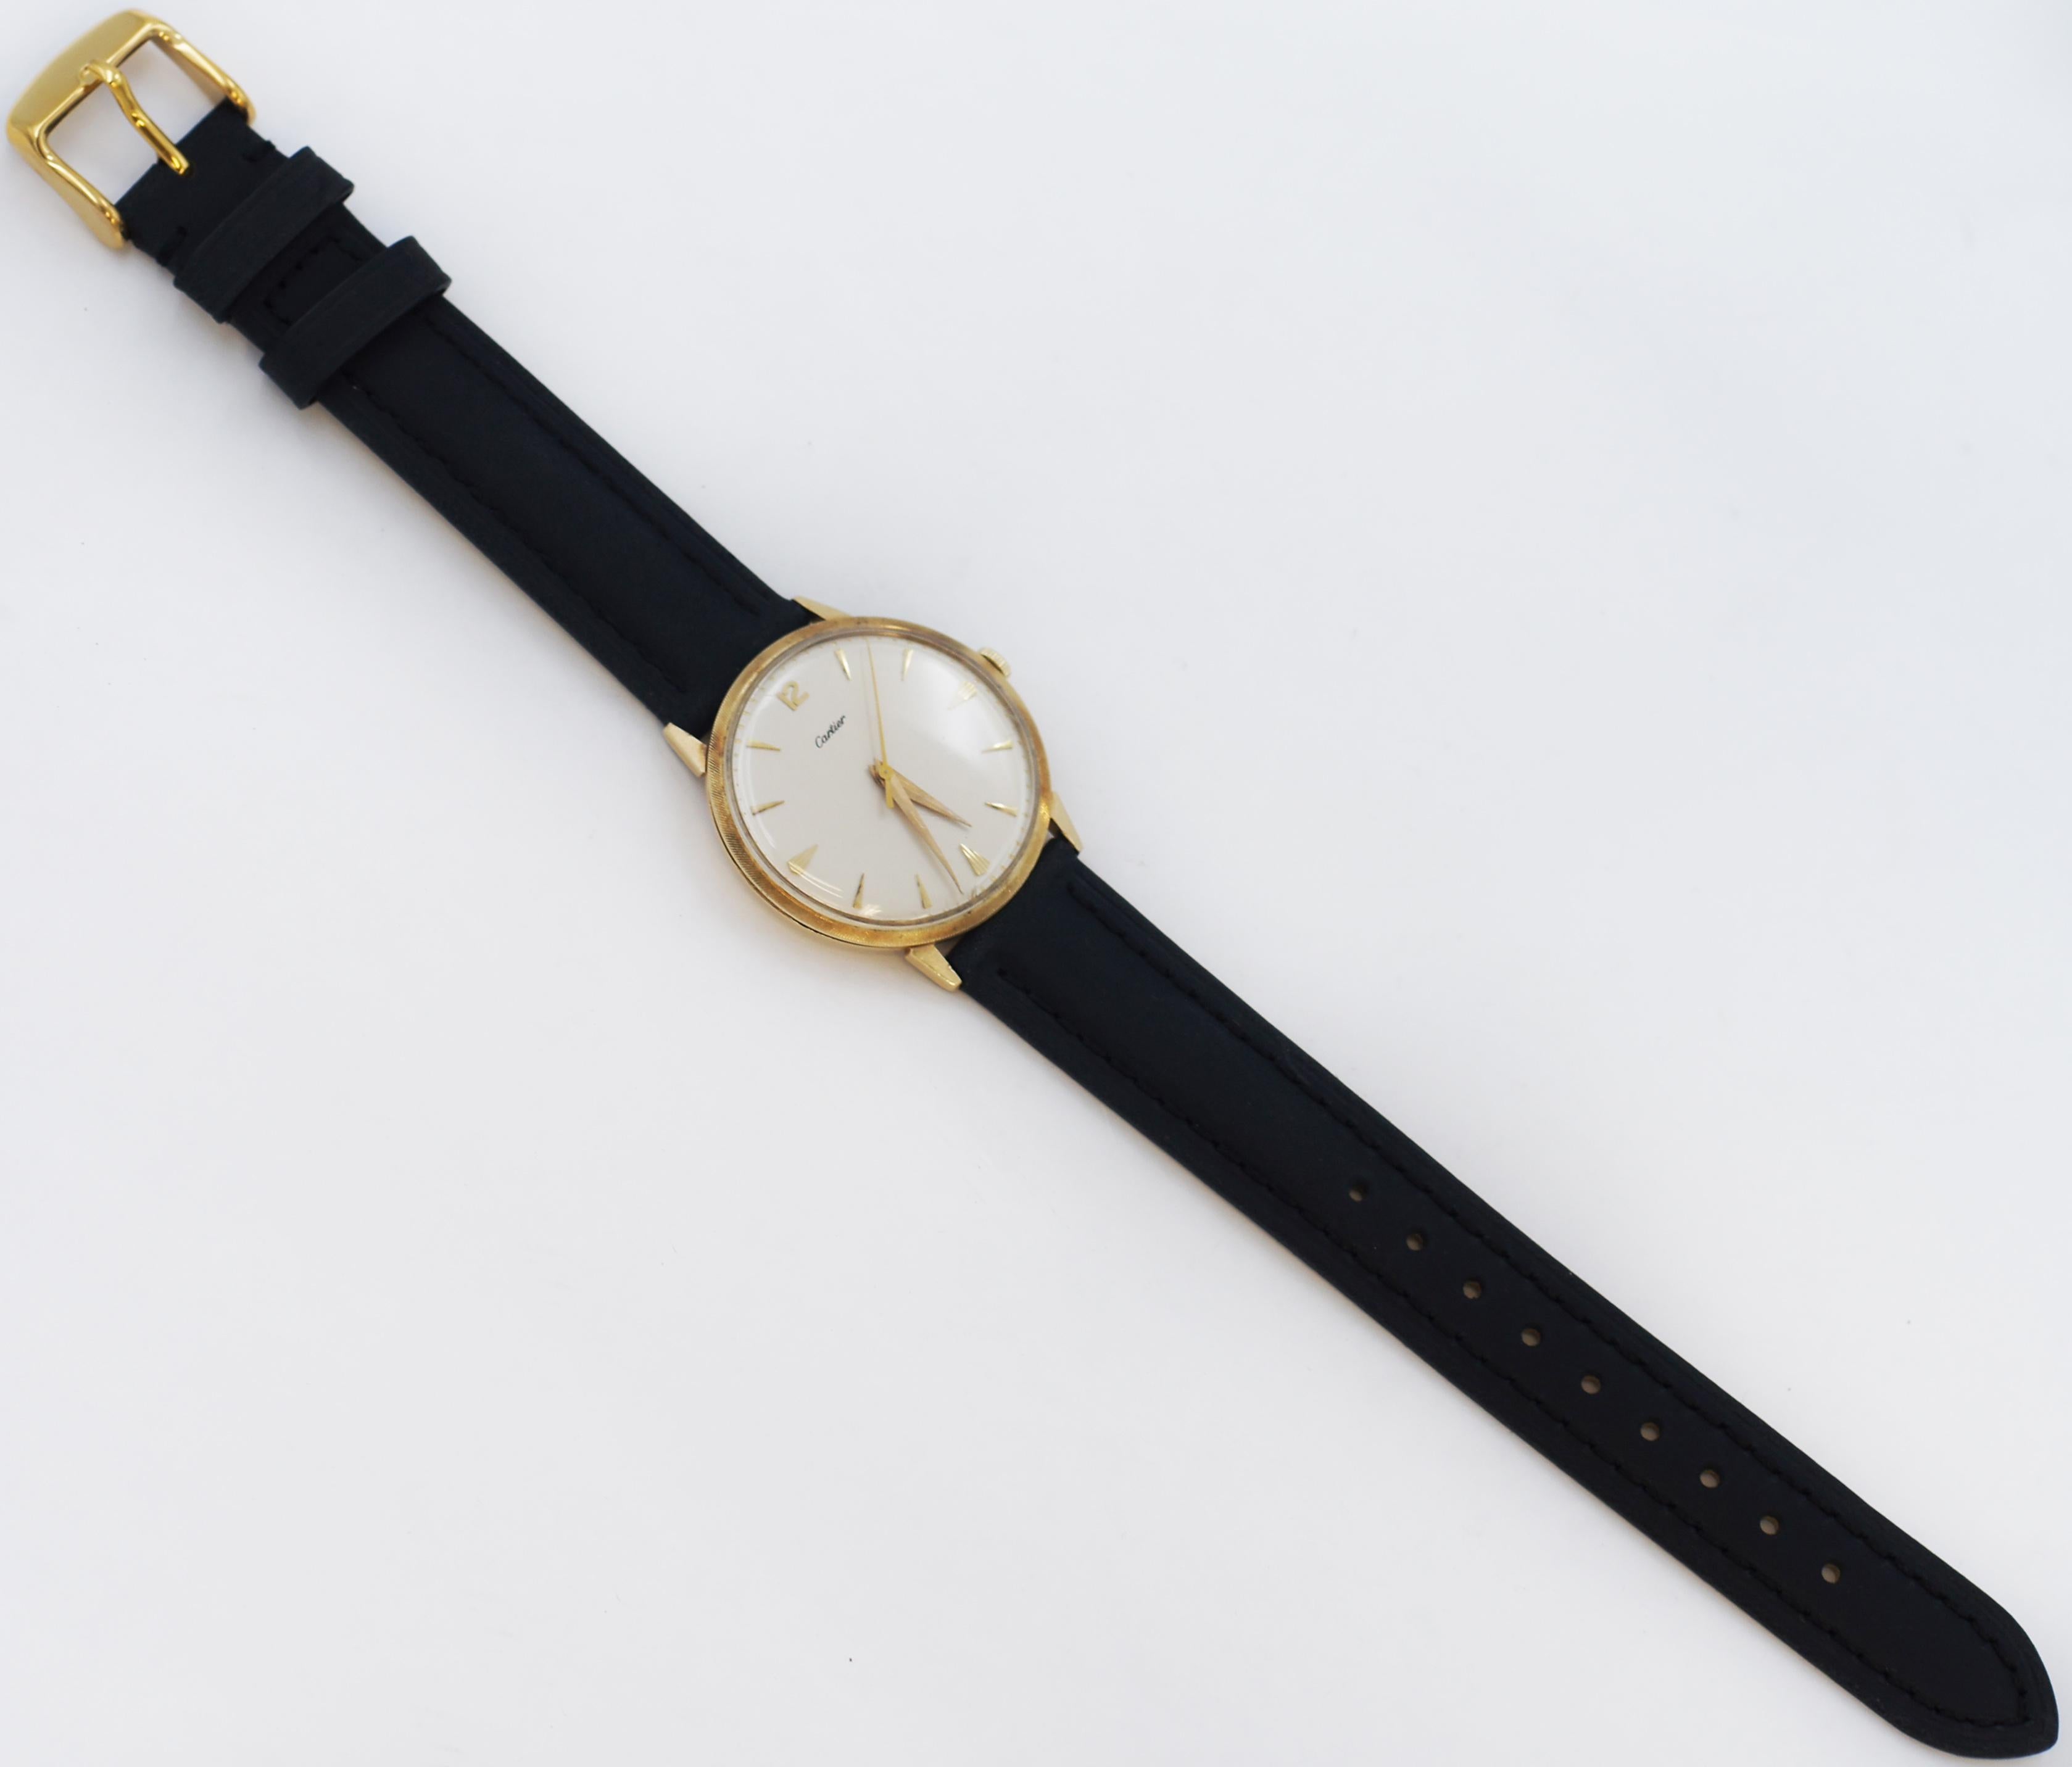 Wir stellen Ihnen einen außergewöhnlichen Fund vor - eine äußerst seltene Armbanduhr der Marke Cartier, die von Movado hergestellt wurde und ungefähr aus den 1940er Jahren stammt. 
Dieser exquisite, handgefertigte Zeitmesser ist ein Zeugnis der